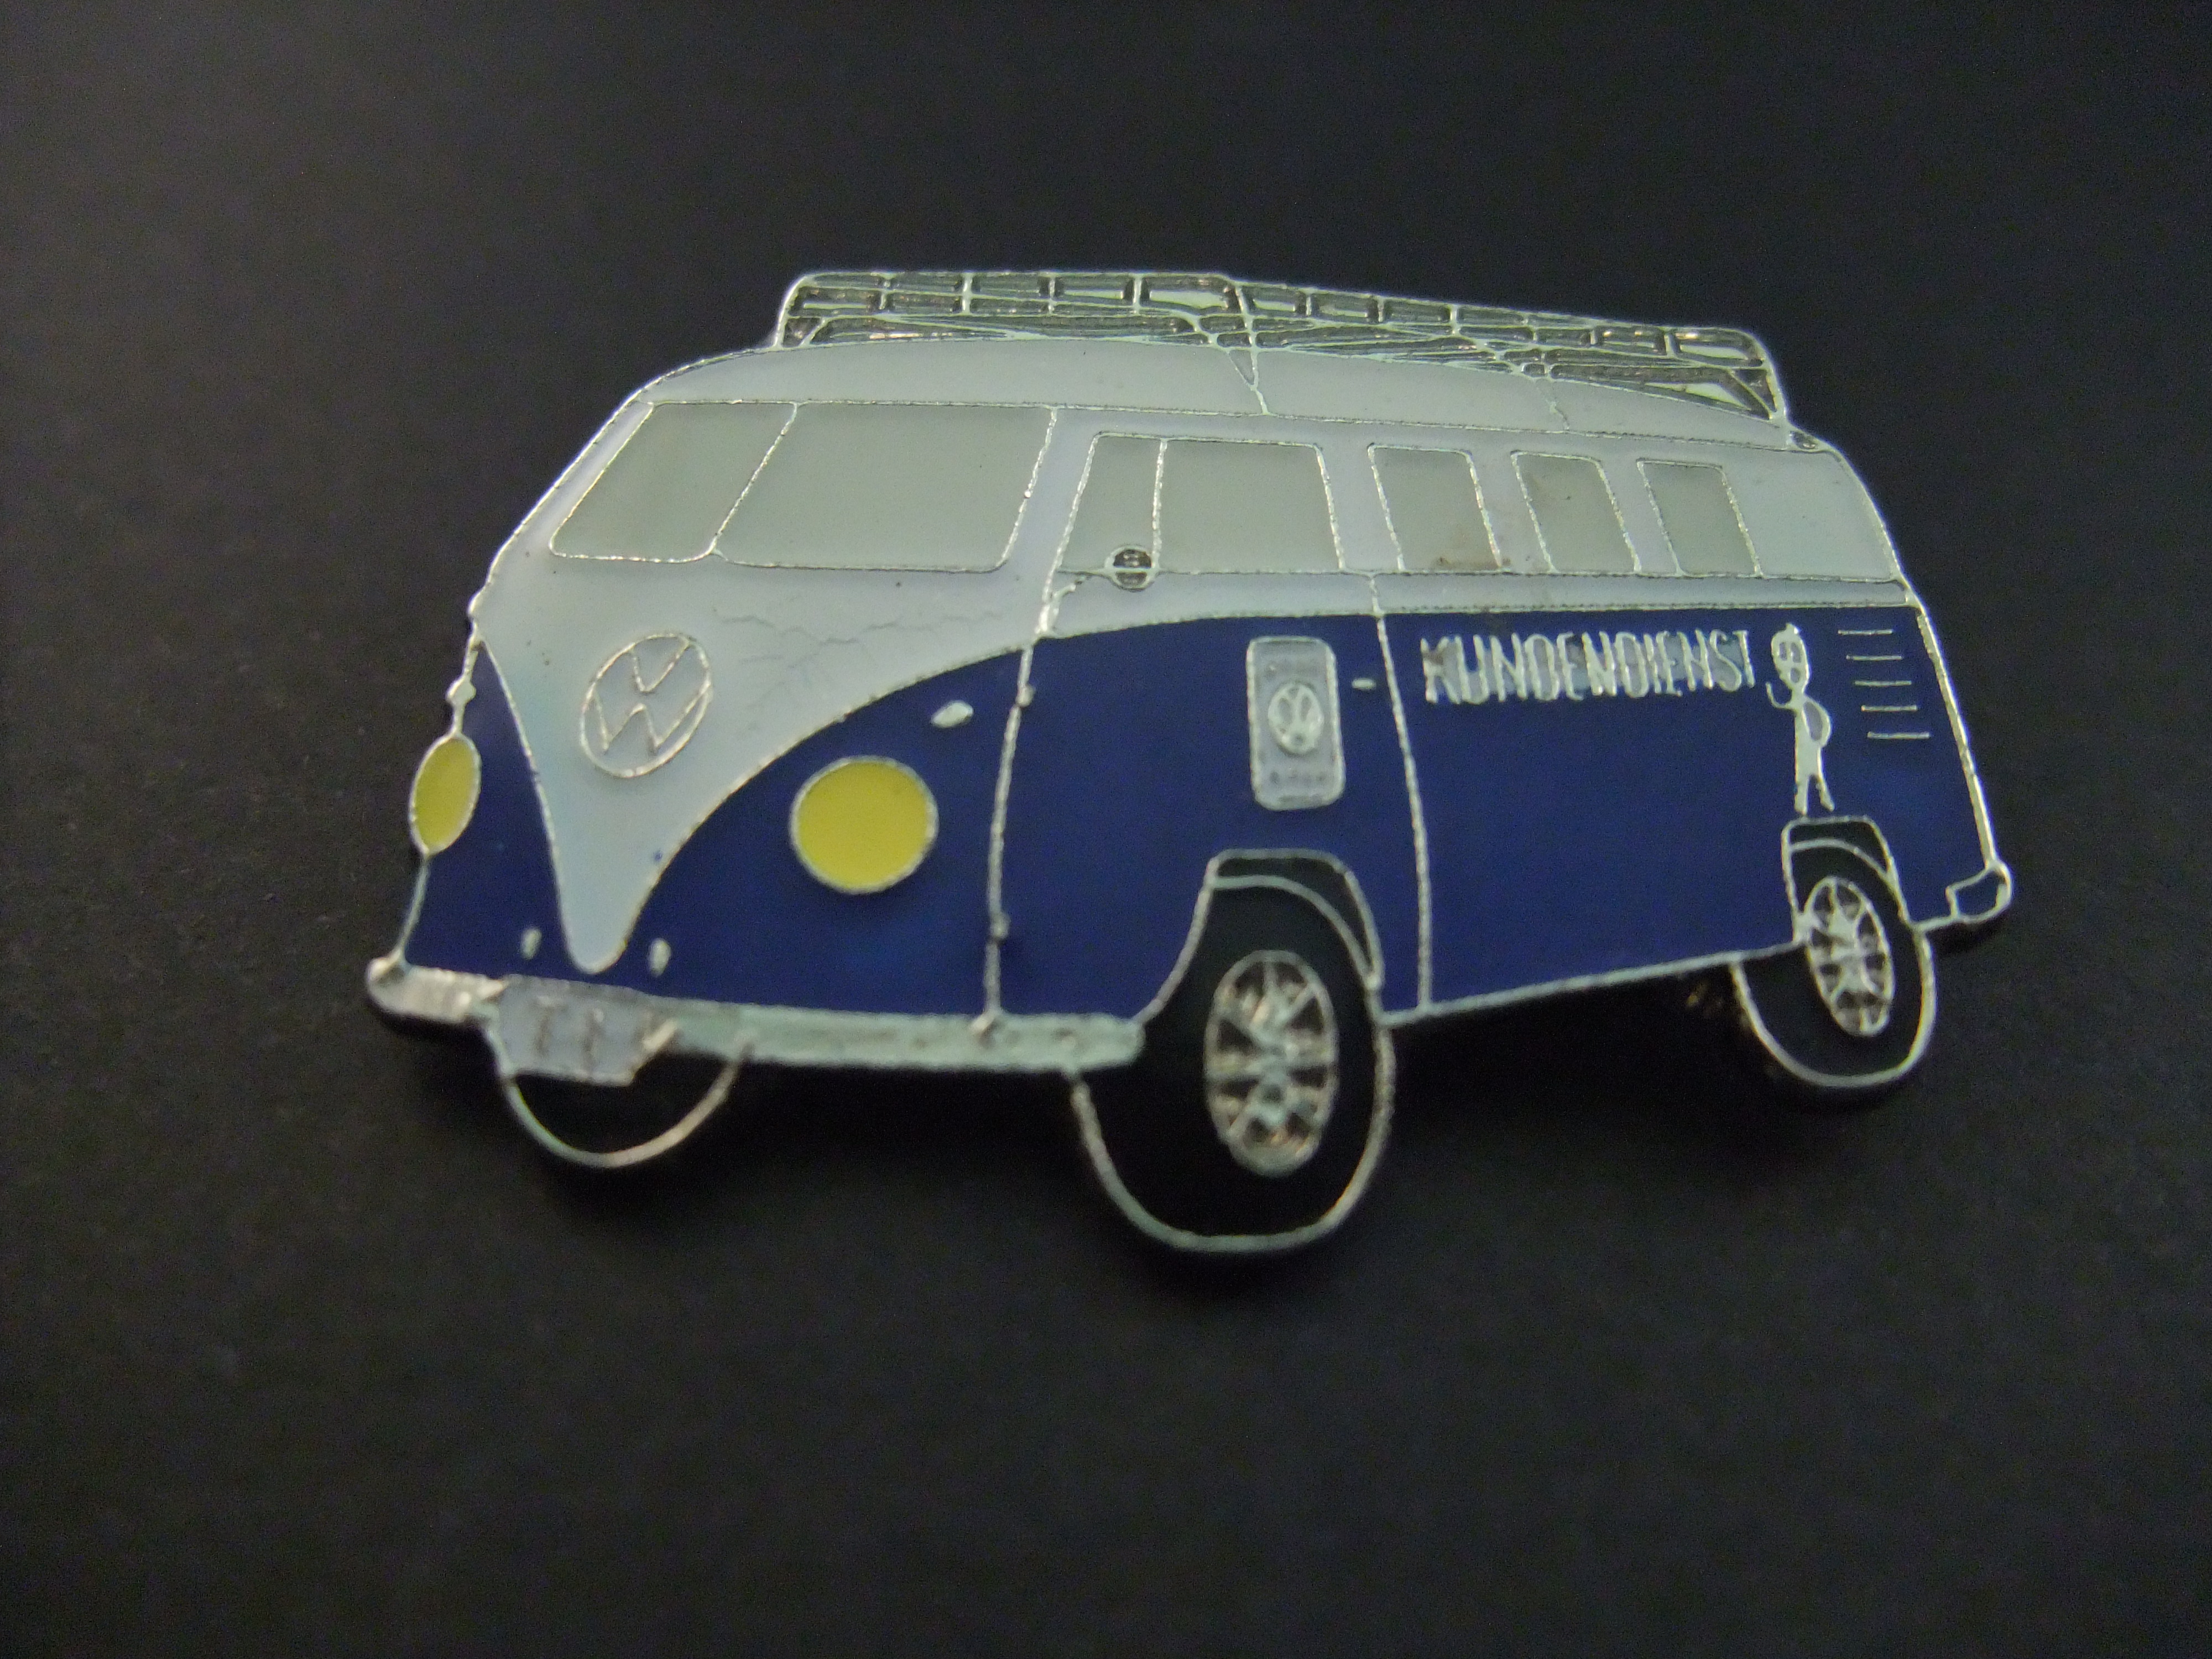 VW Volkswagen T1 spijlbus met imperial blauw lichten aan Kundedienst